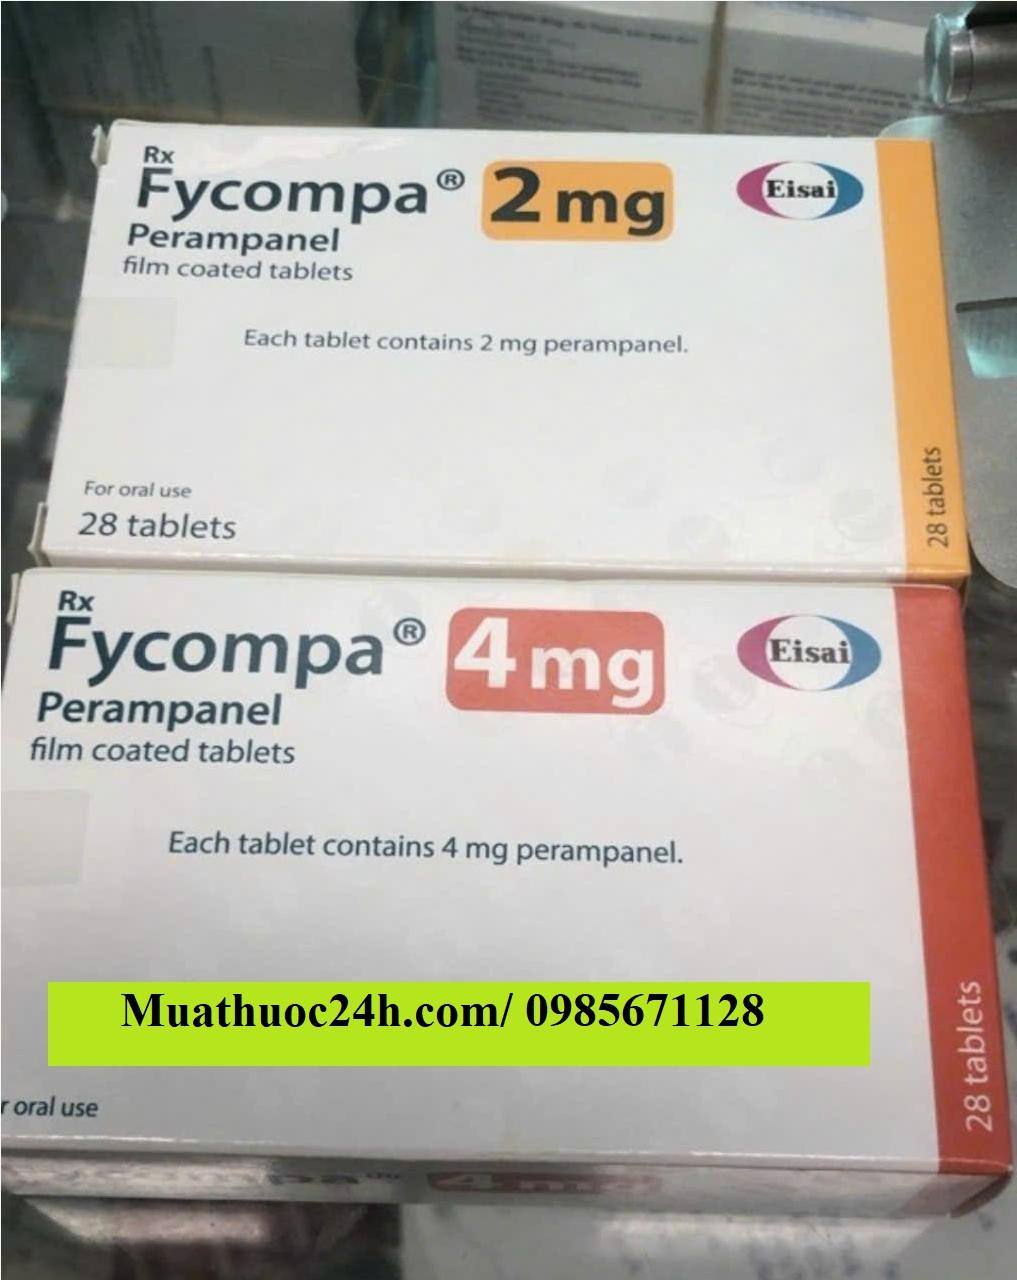 Thuốc Fycompa 2mg, 4mg Perampanel giá bao nhiêu mua ở đâu?